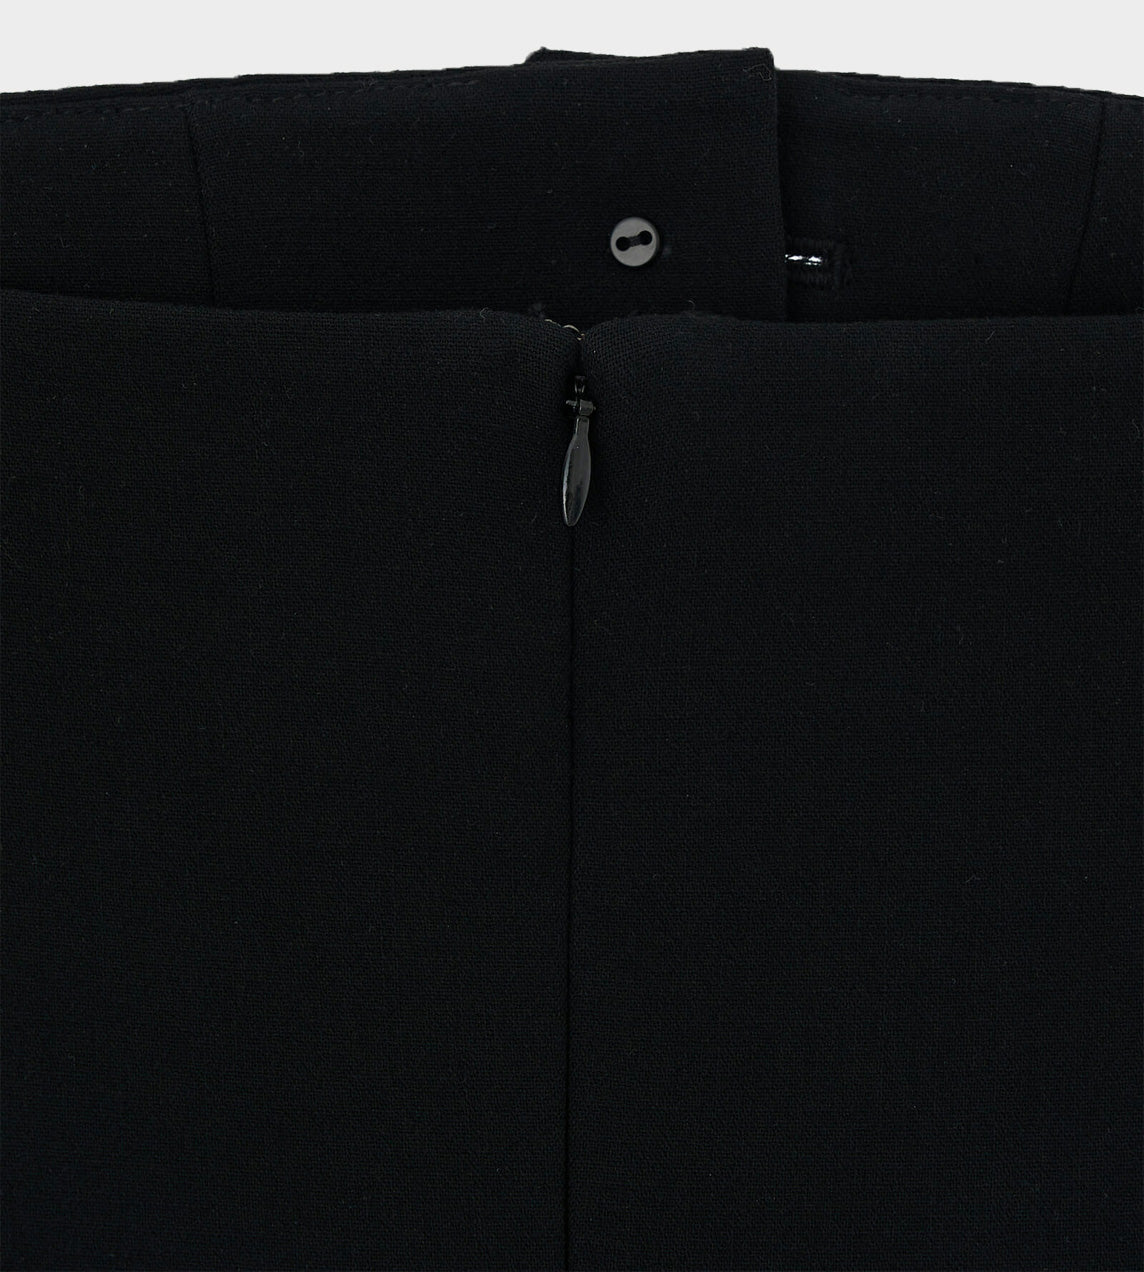 KIMHEKIM - Strapless Mini Dress Black/White